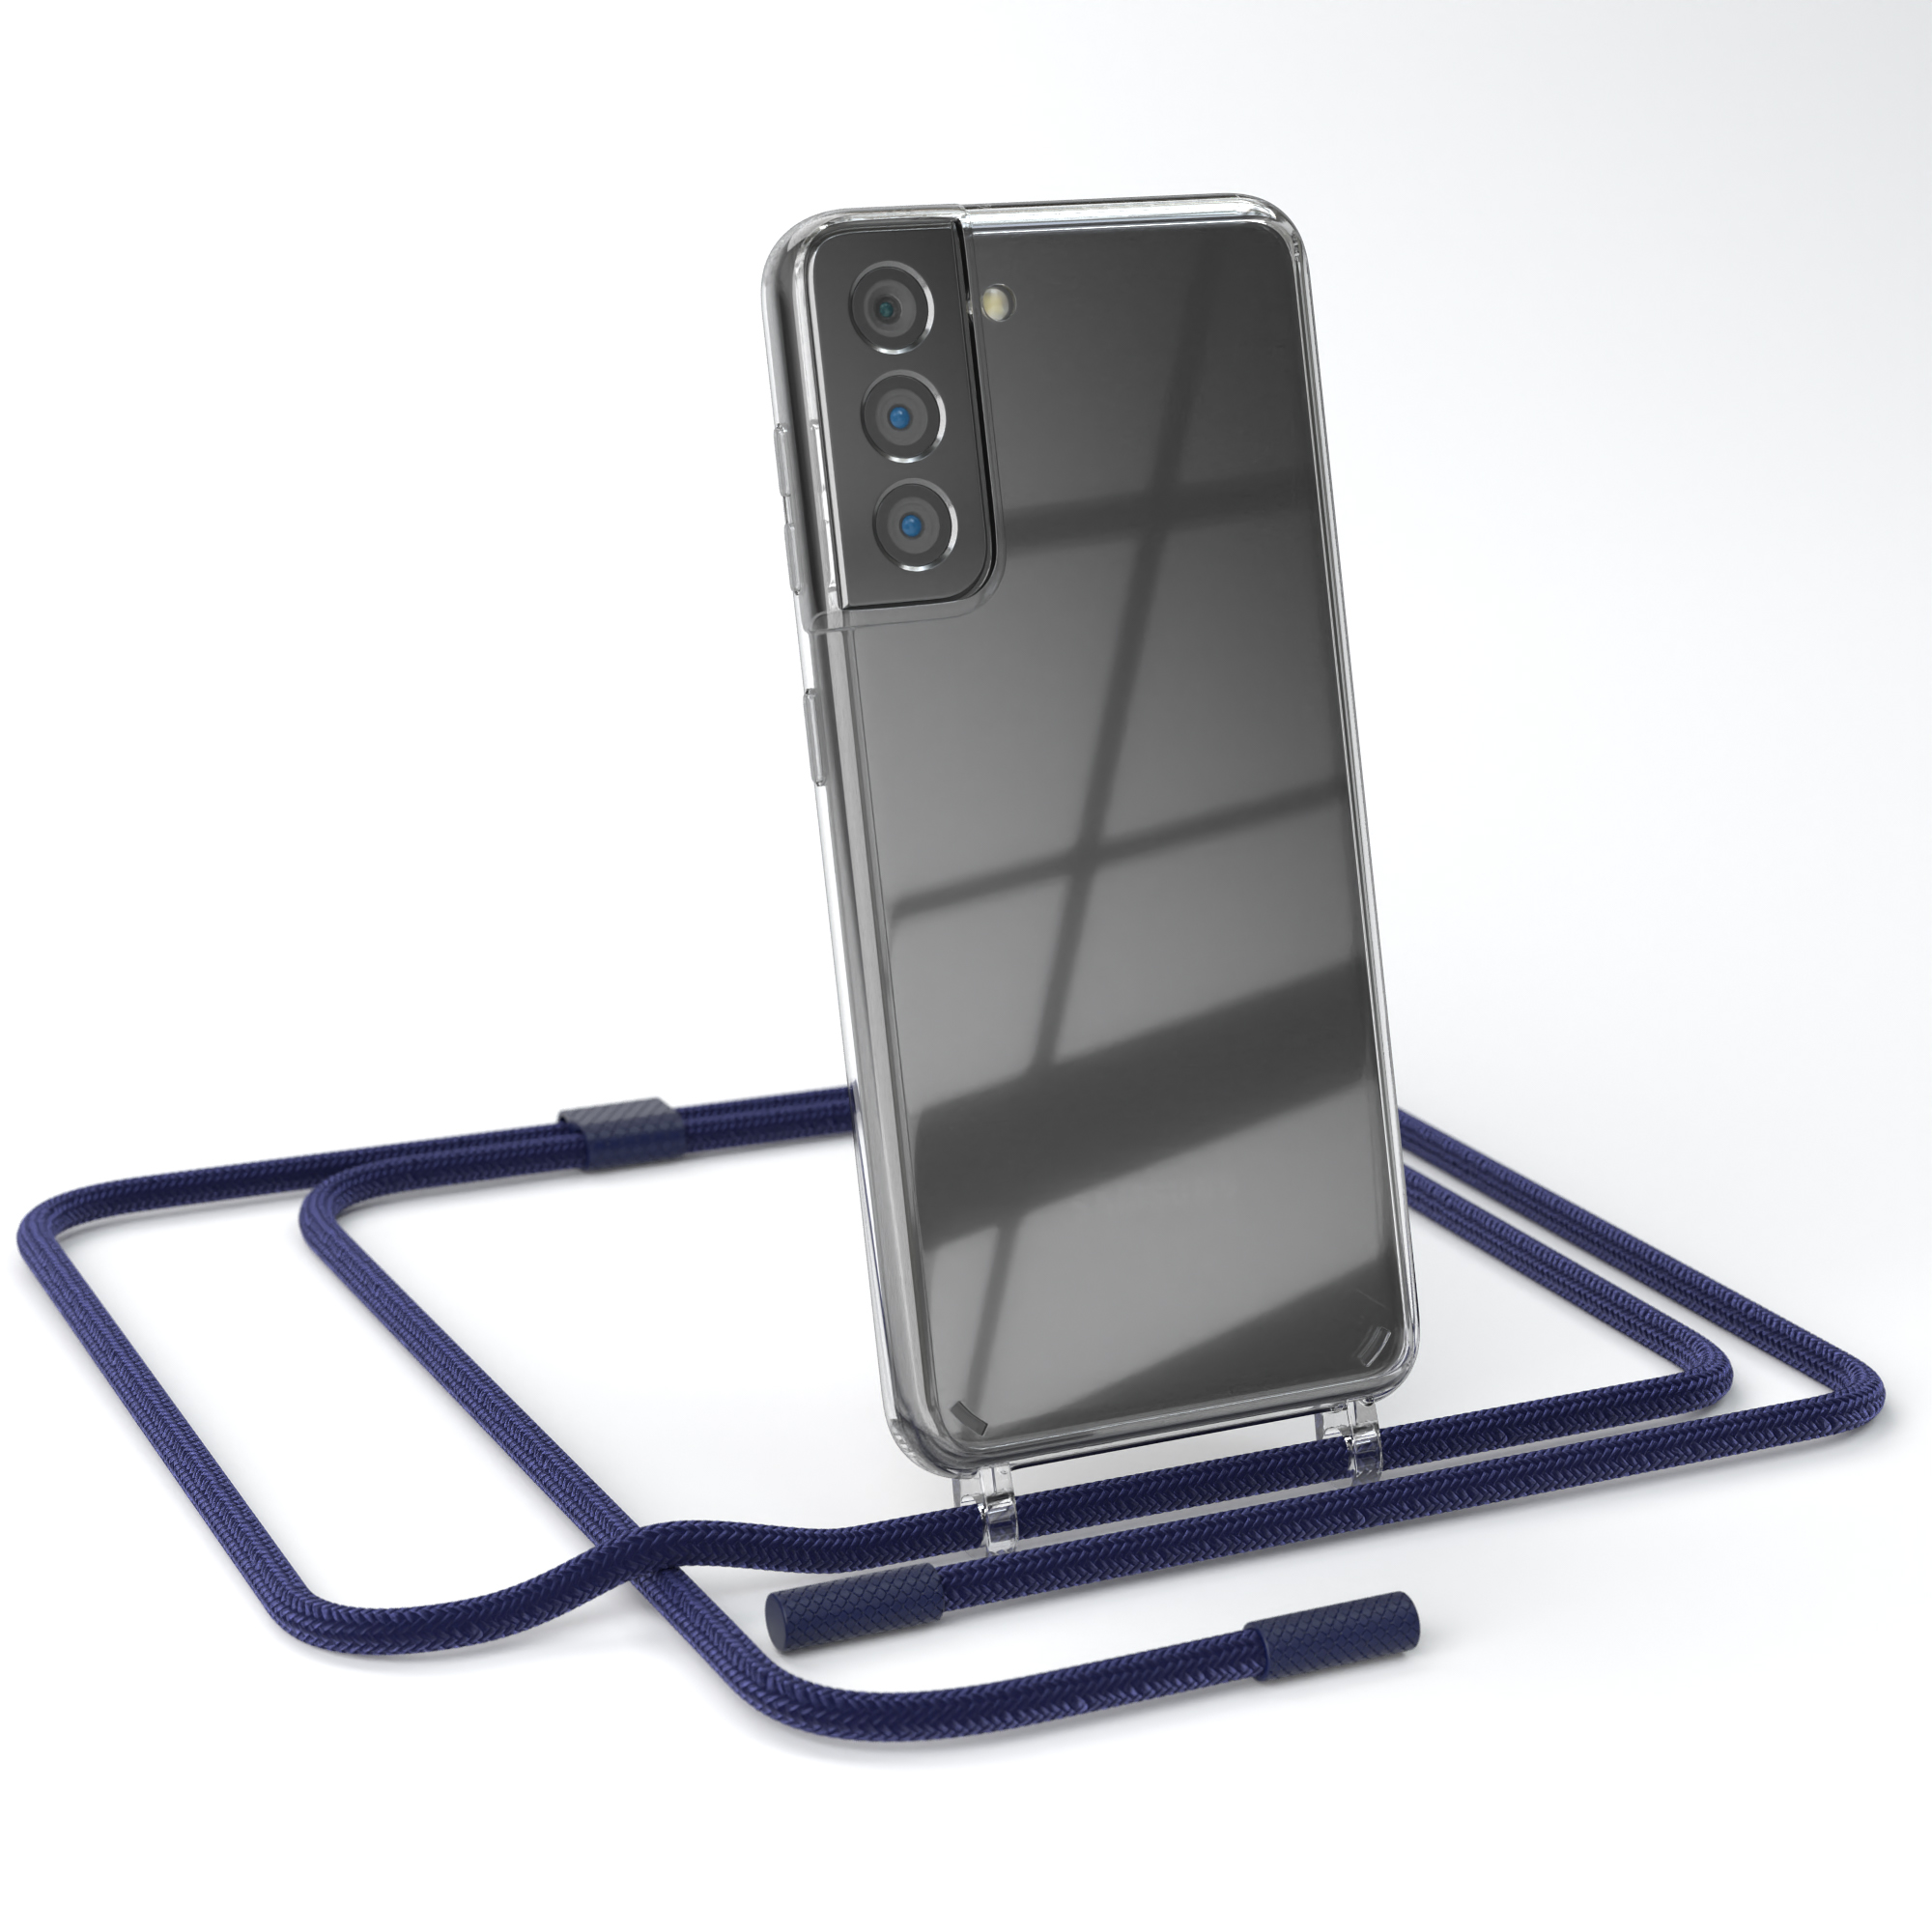 EAZY CASE Transparente Handyhülle mit S21 Samsung, Umhängetasche, Nachtblau / Kette Galaxy 5G, unifarbend, Dunkelblau runder